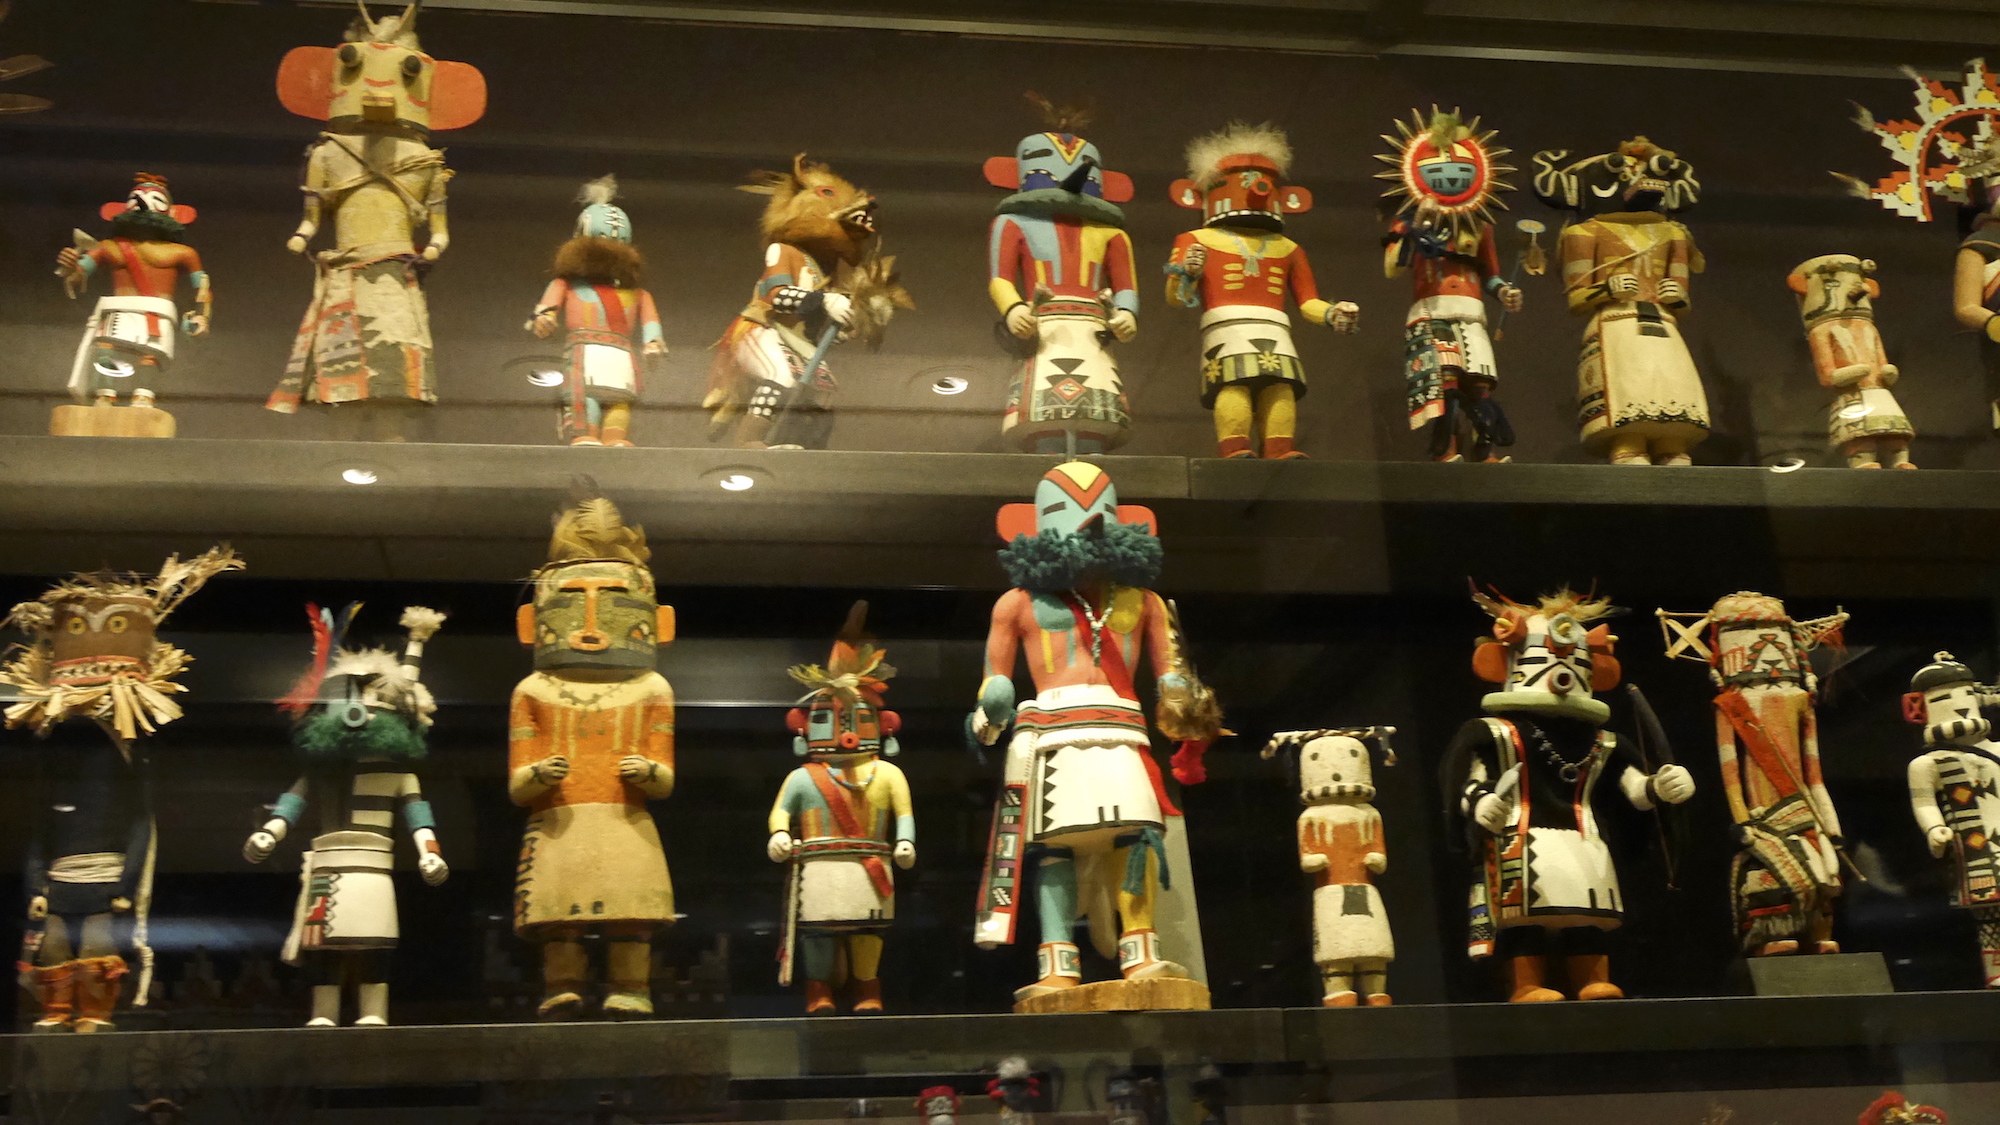 Kachina dolls of the Hopi tribe